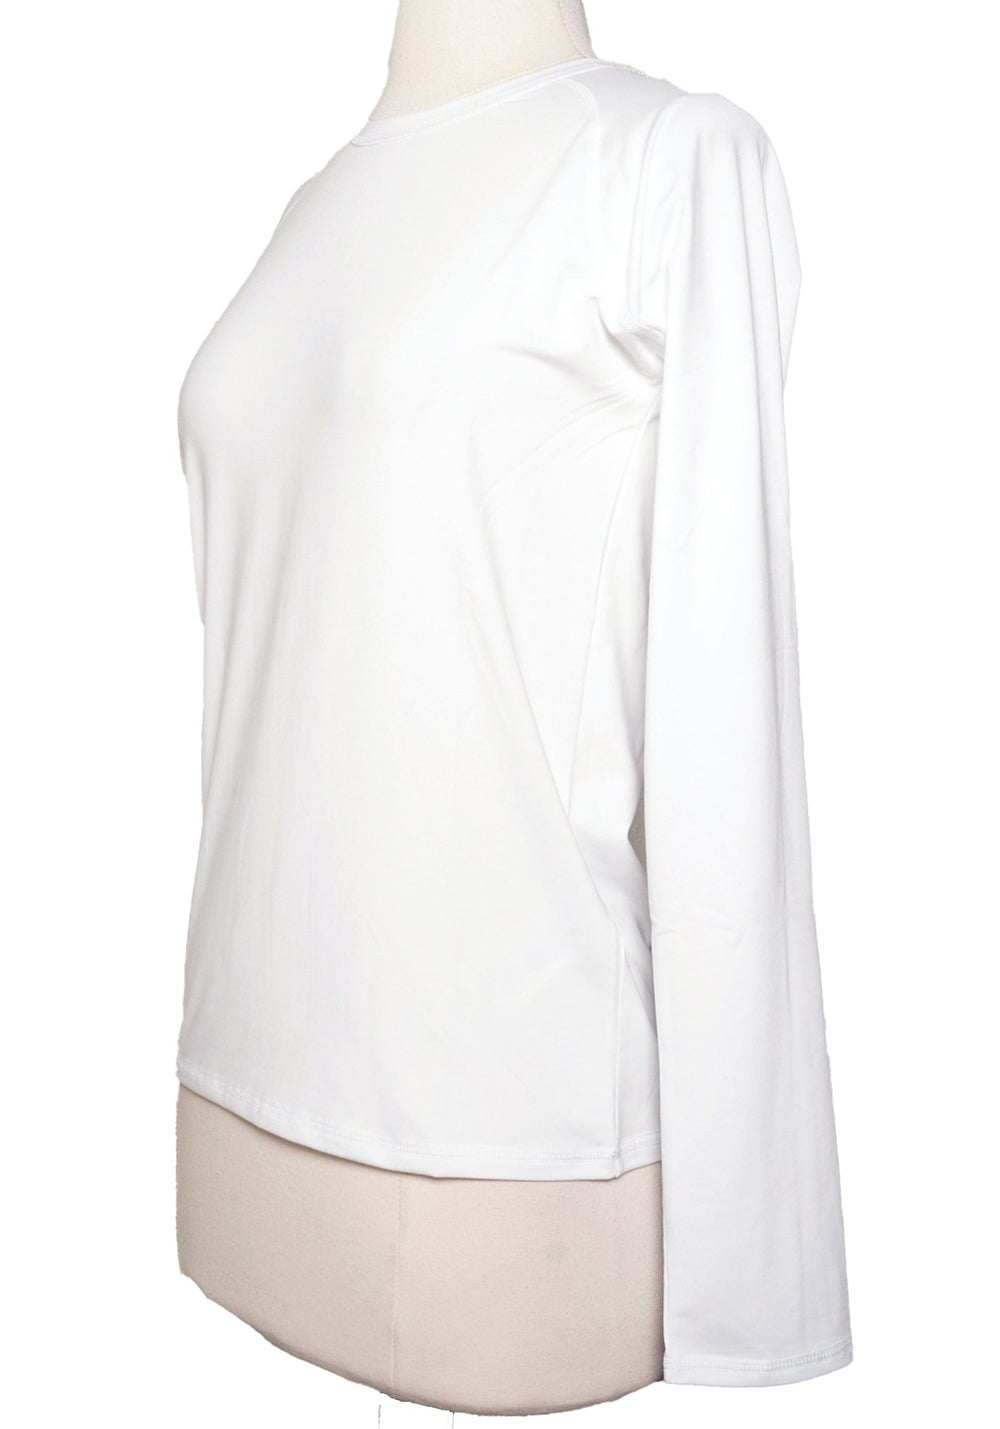 RLX Ralph Lauren Long Sleeve Golf Top - White - Size Small - Skorzie